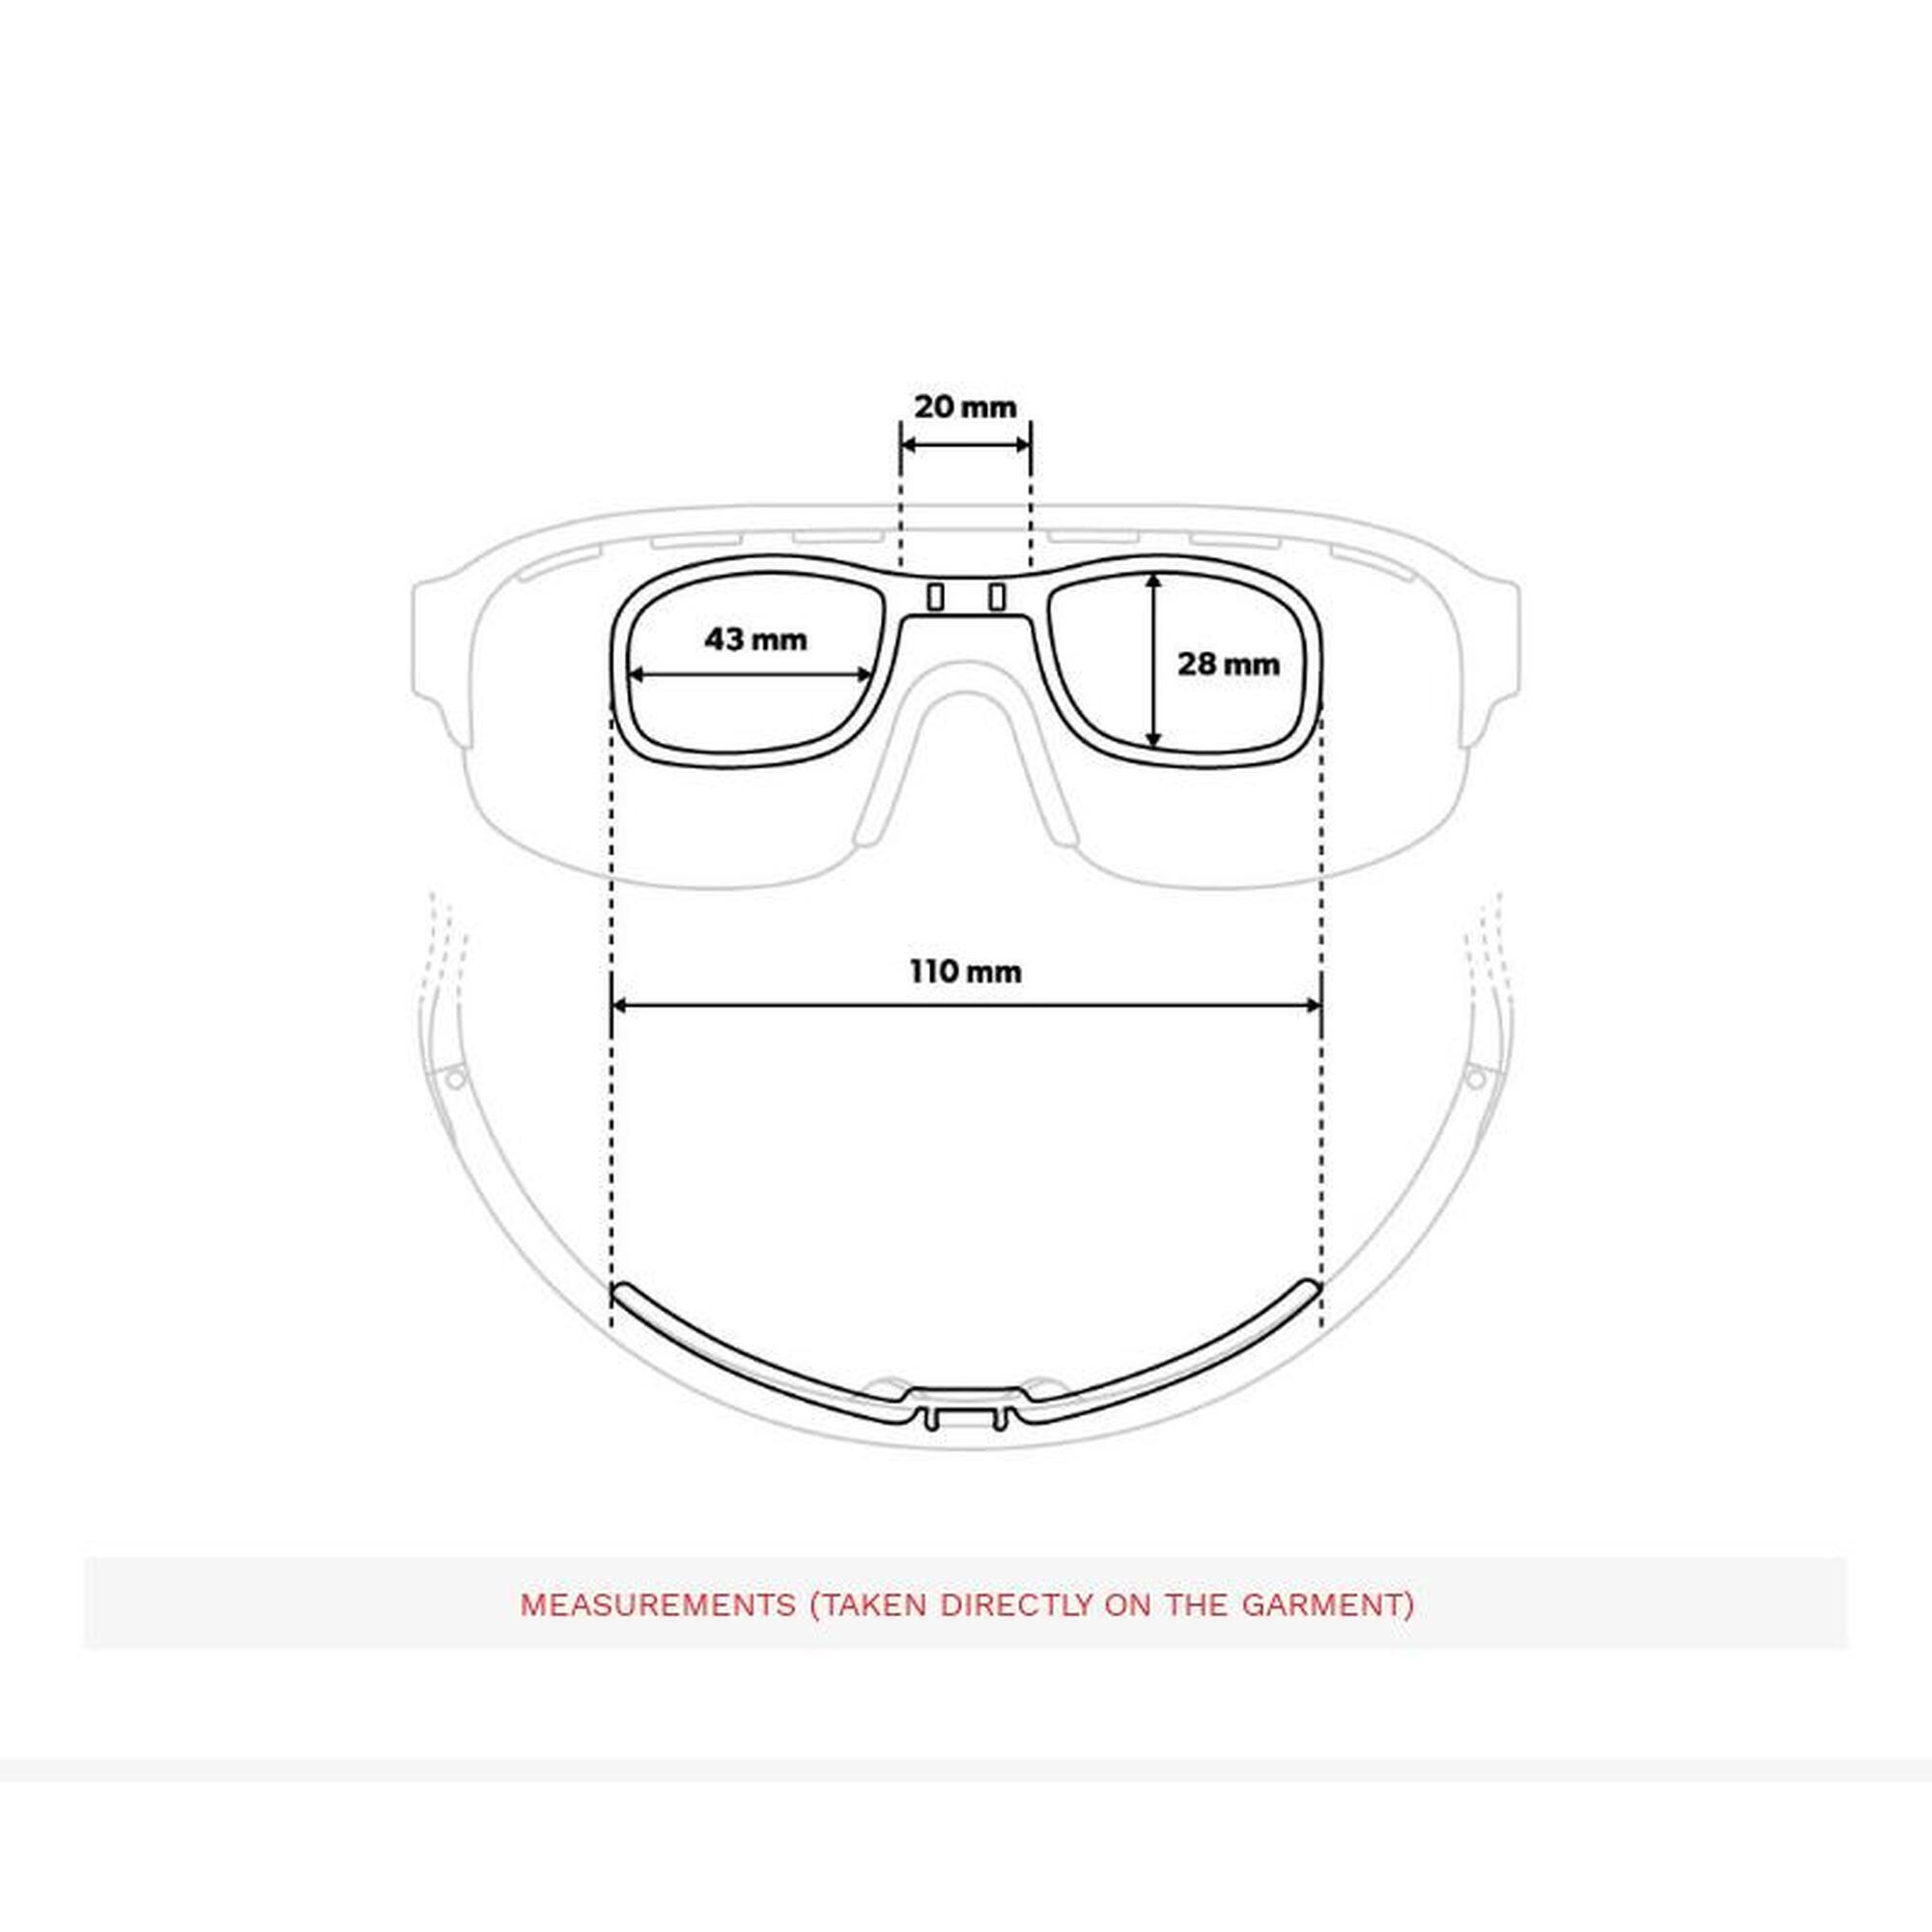 Clip optique pour lunettes de sport K3 OptiClip